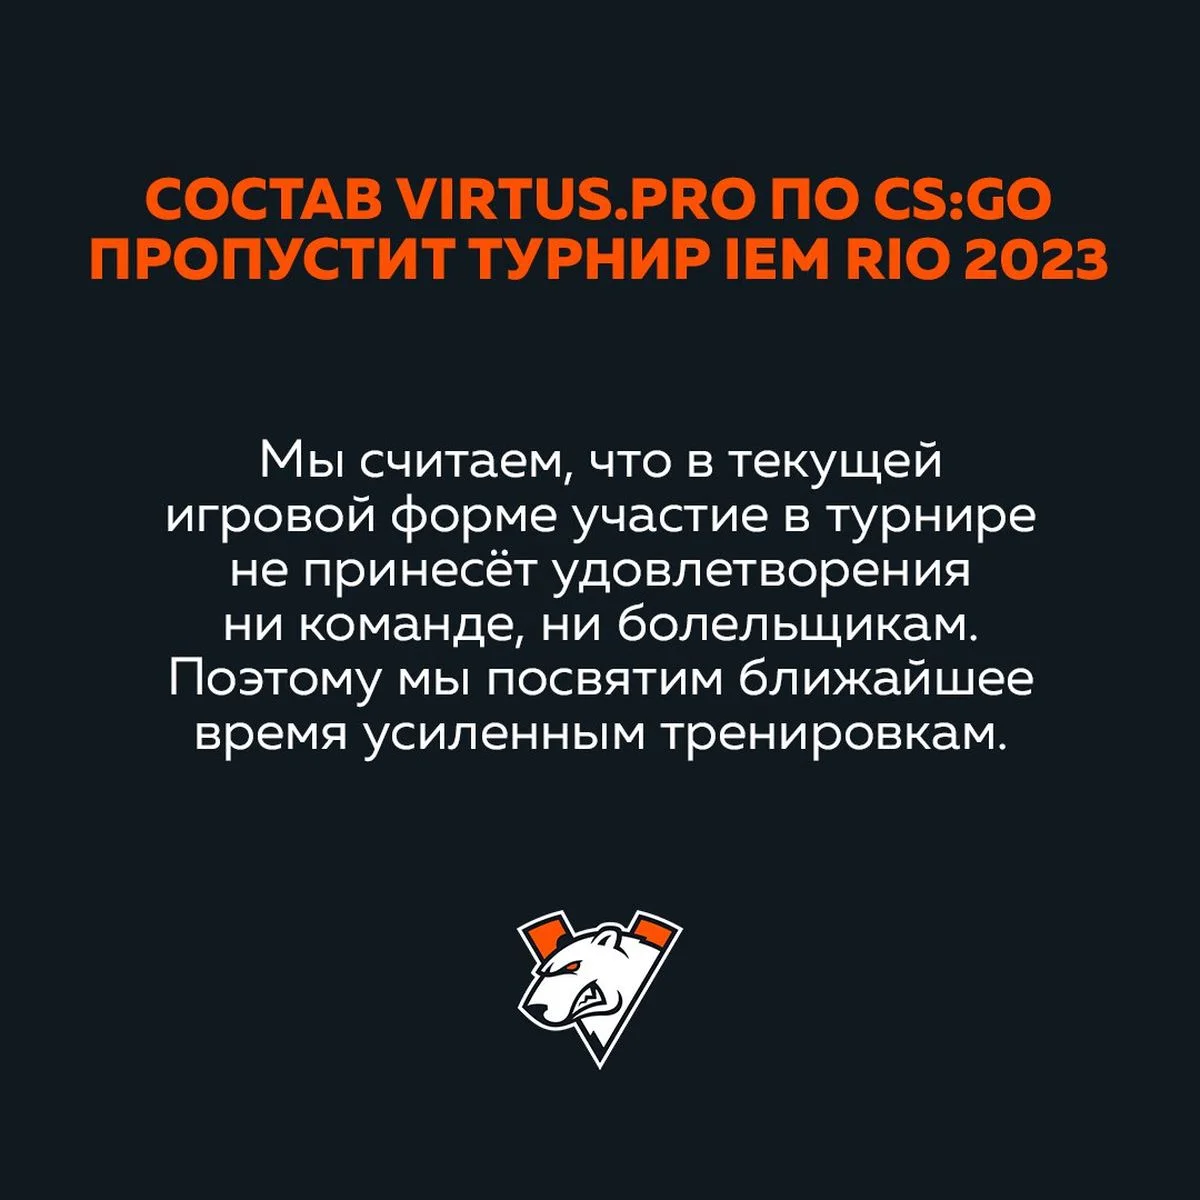 Virtus pro отказалась от участия в IEM Rio 2023 - фото 1